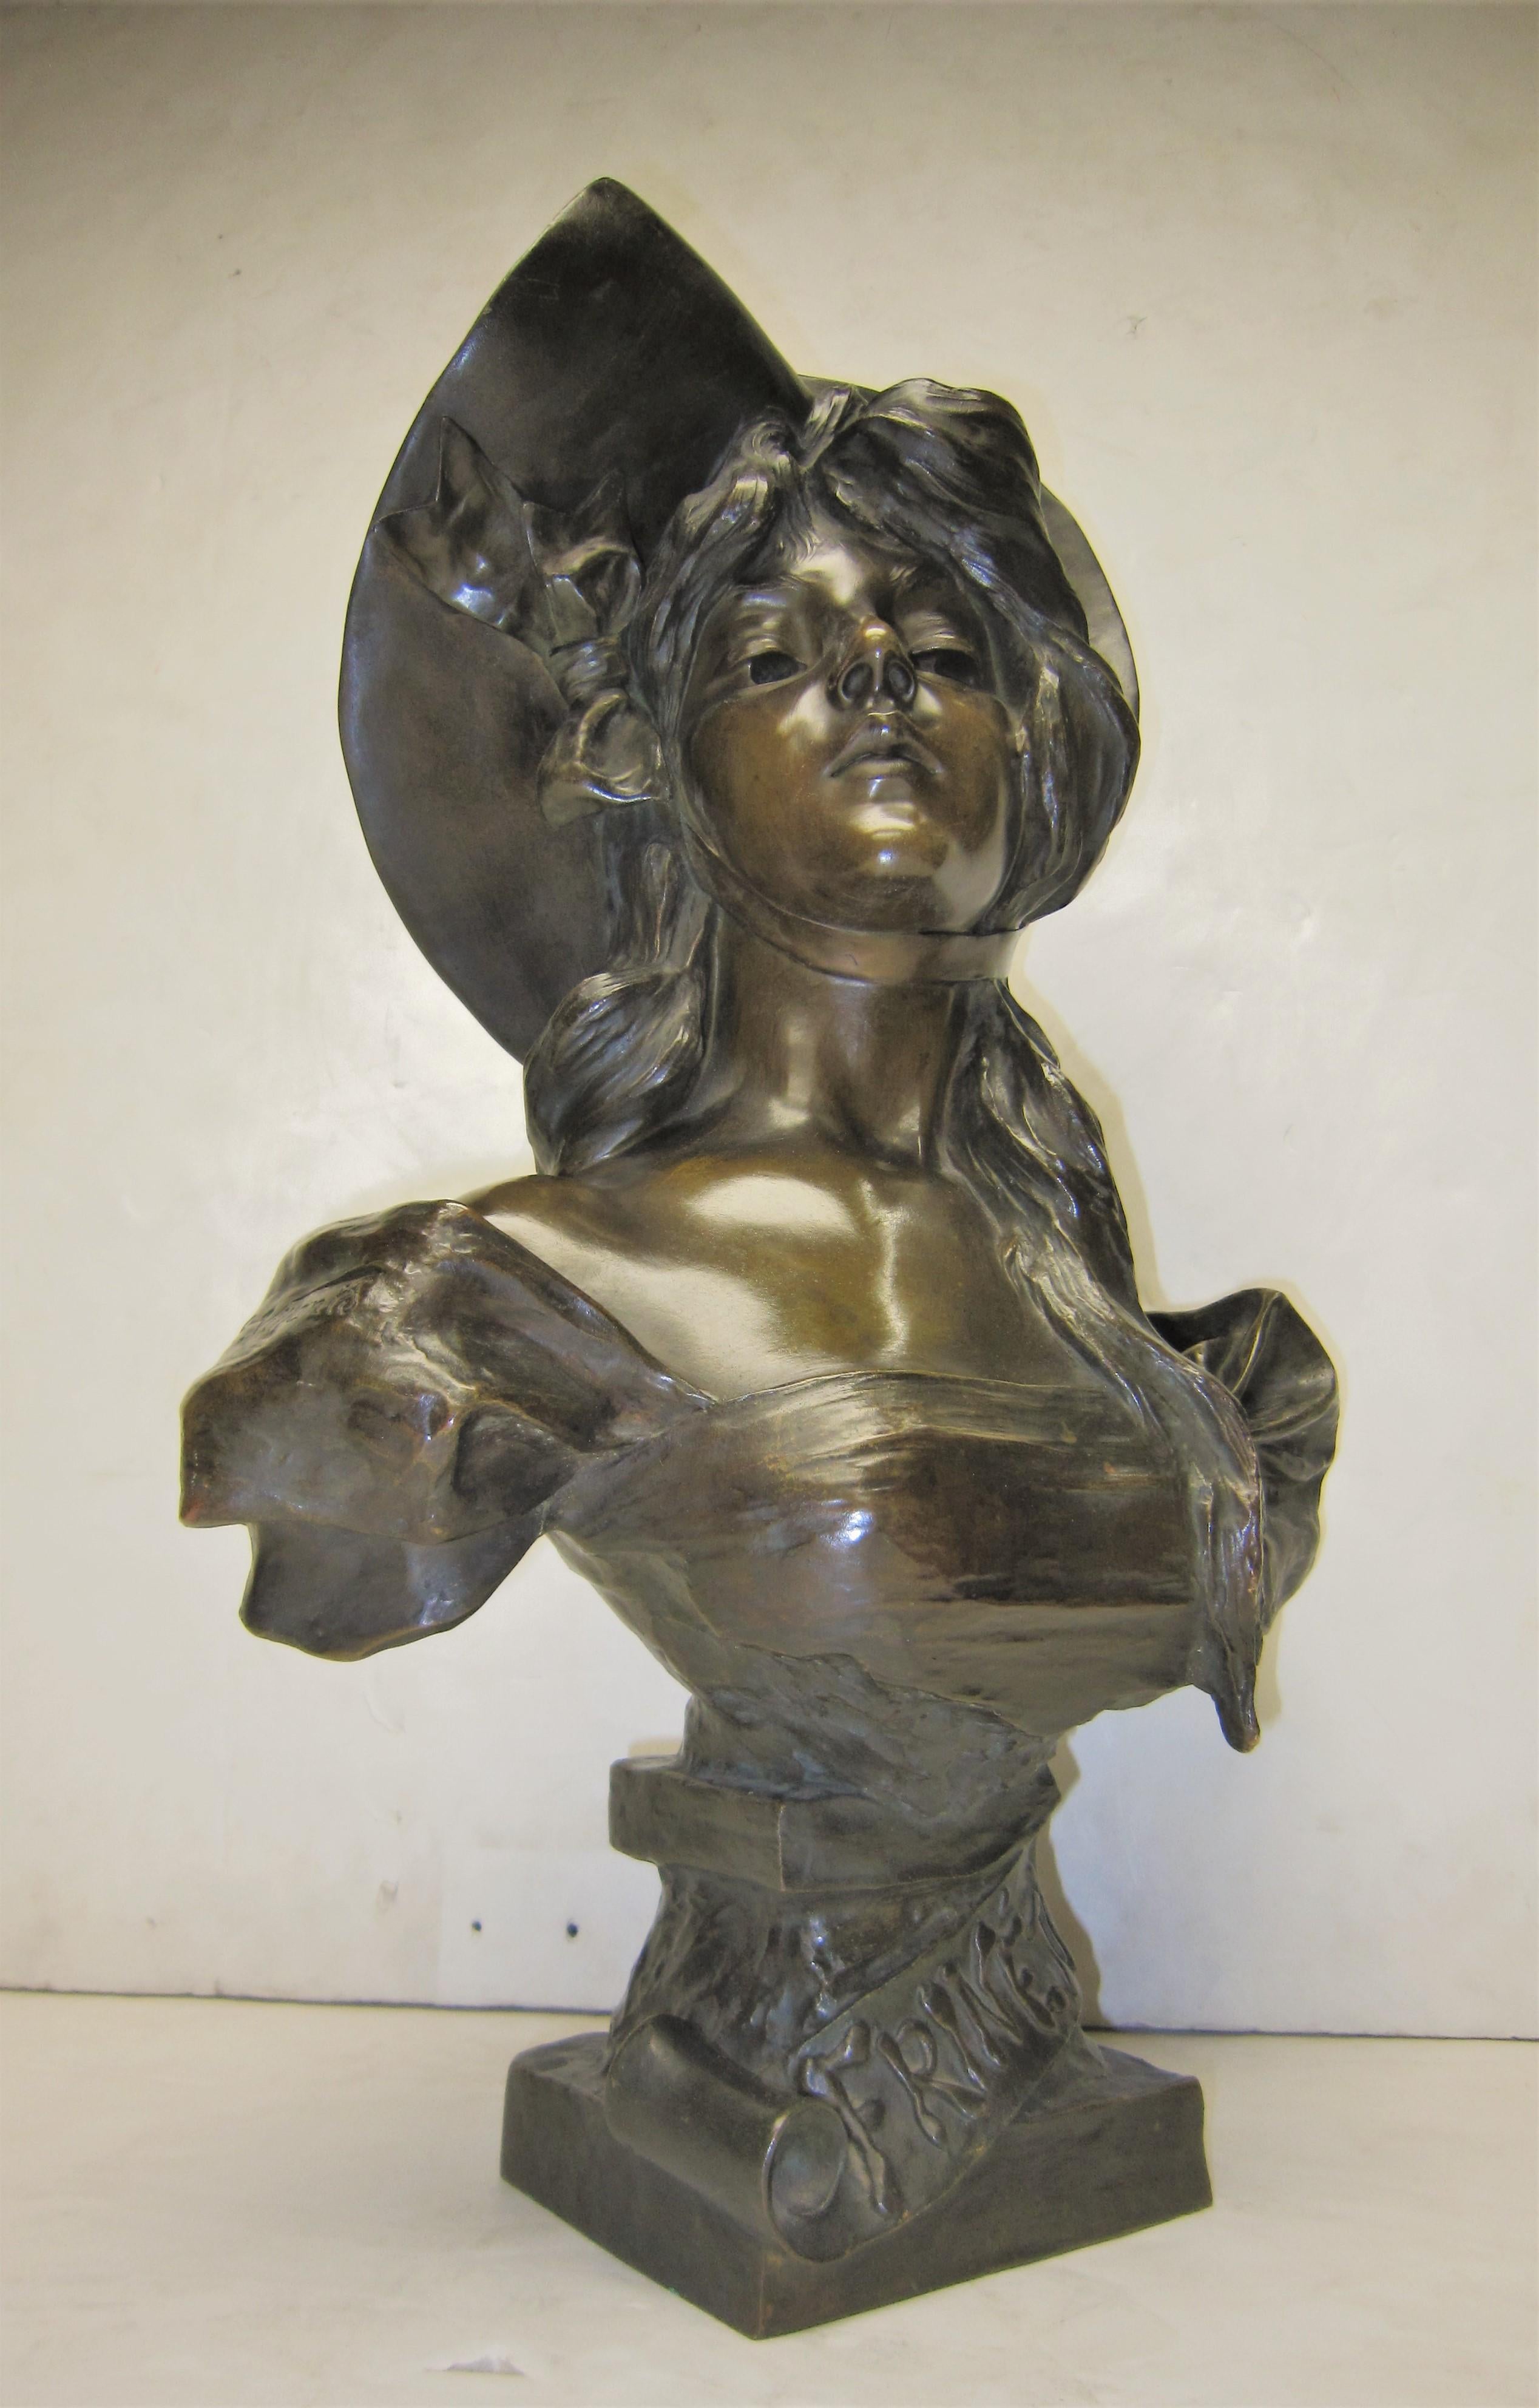 Statuette française en bronze polychrome très décorative de la fin du XIXe-début du XXe siècle représentant une jeune femme aux traits ciselés portant un corsage bas.
Le buste Art nouveau intitulé 